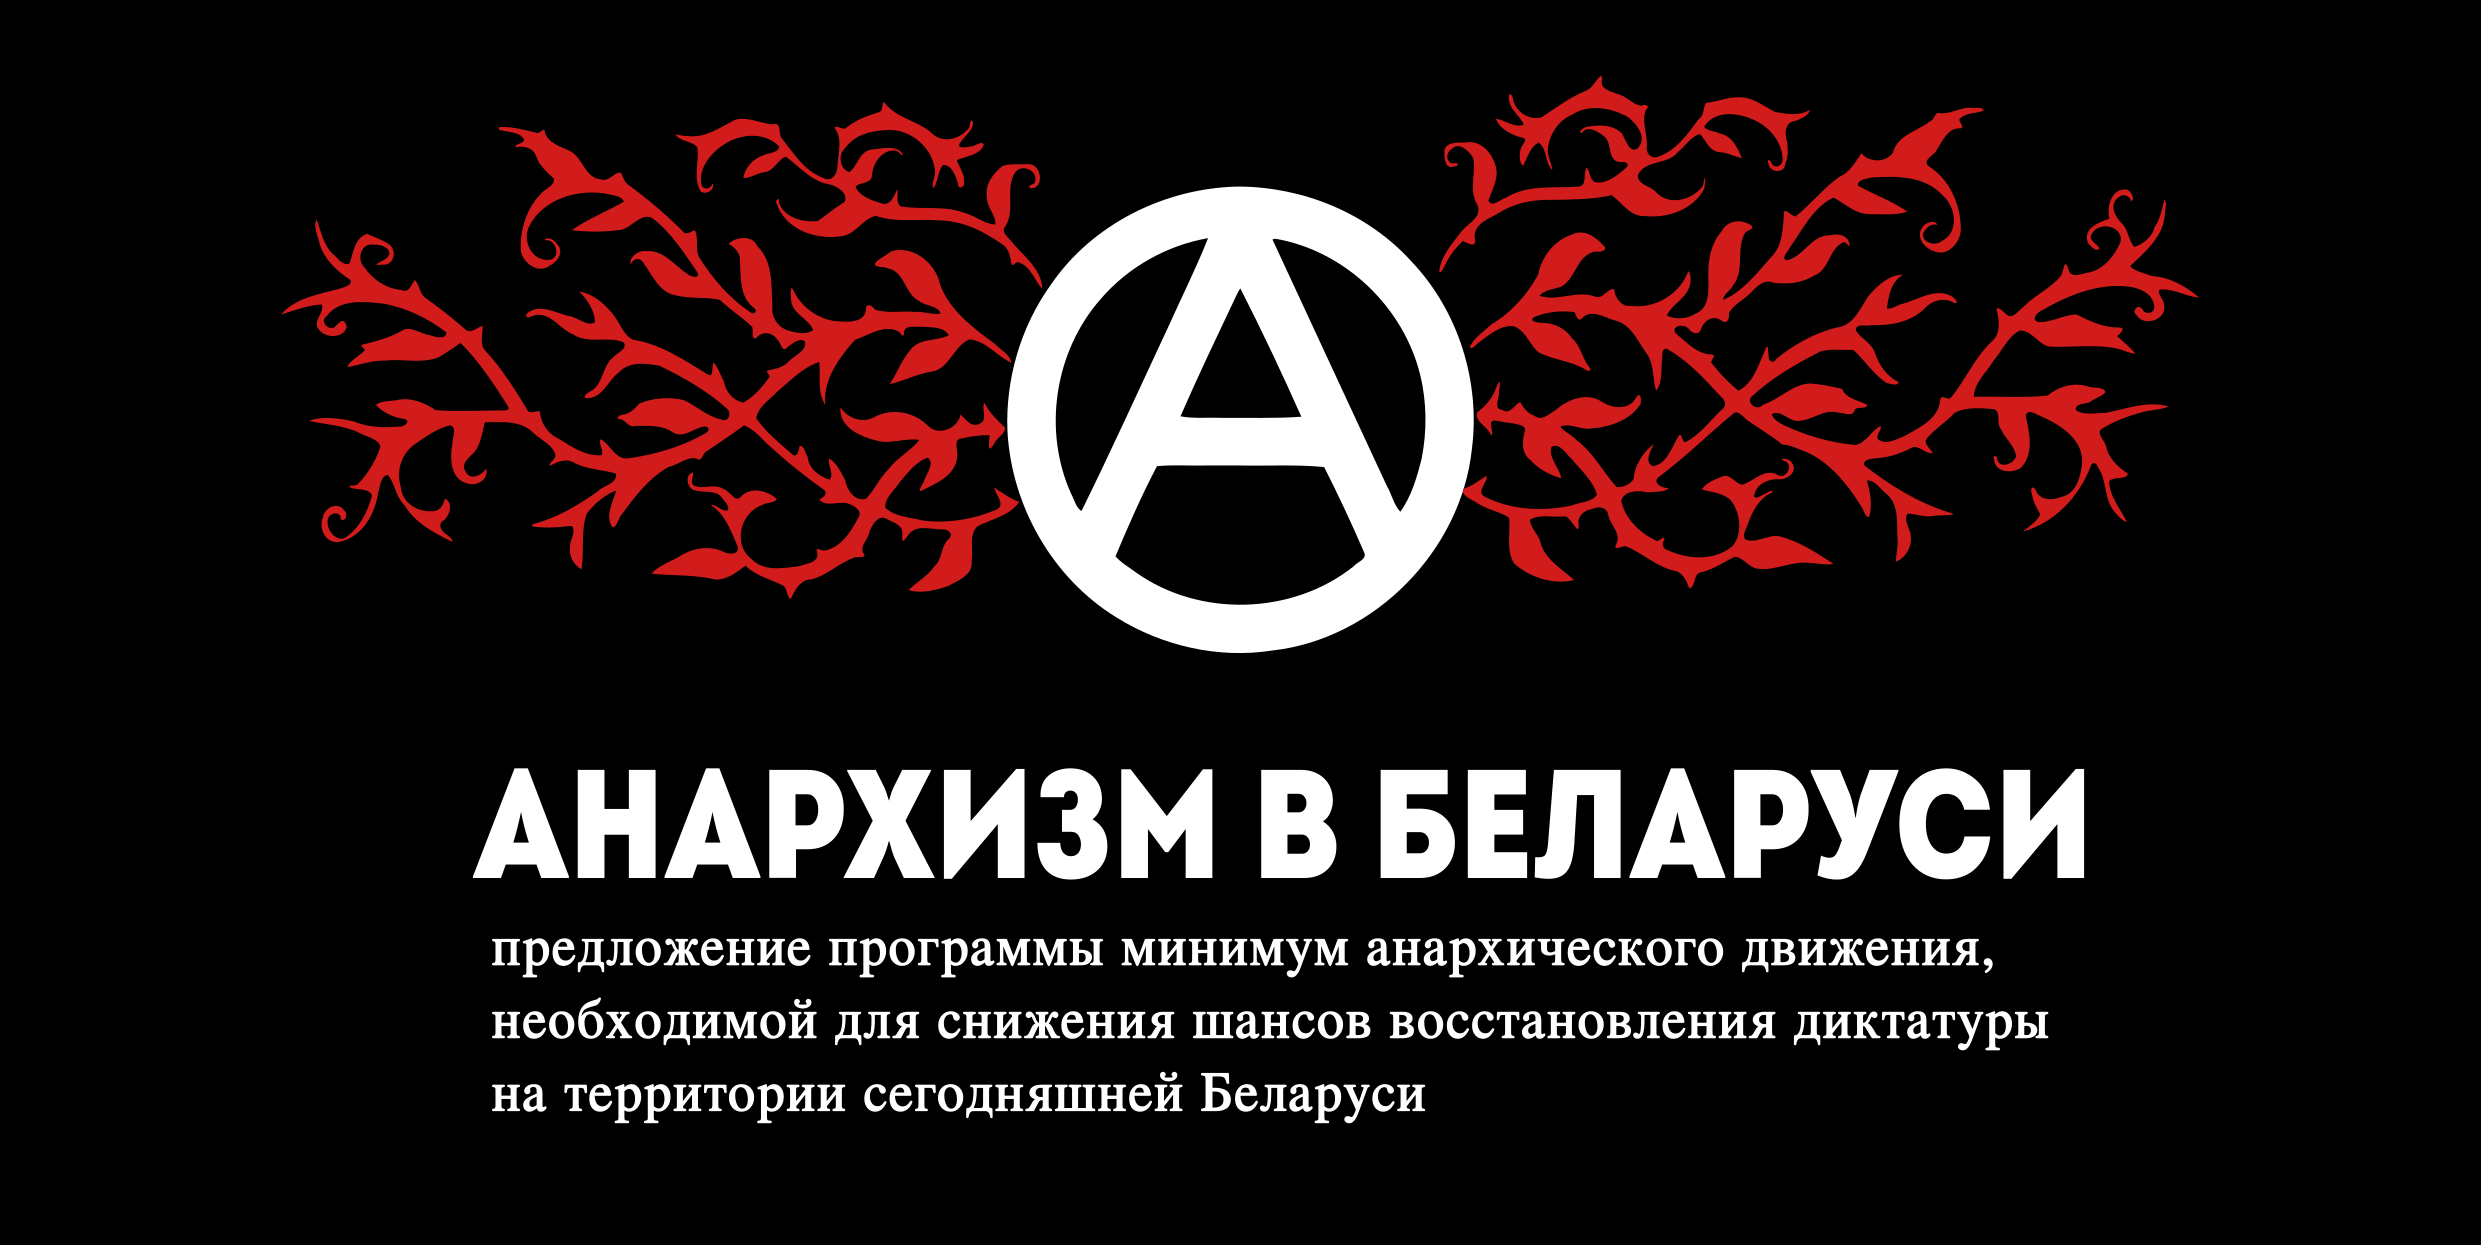 Предложение программы минимум на время восстания в Беларуси